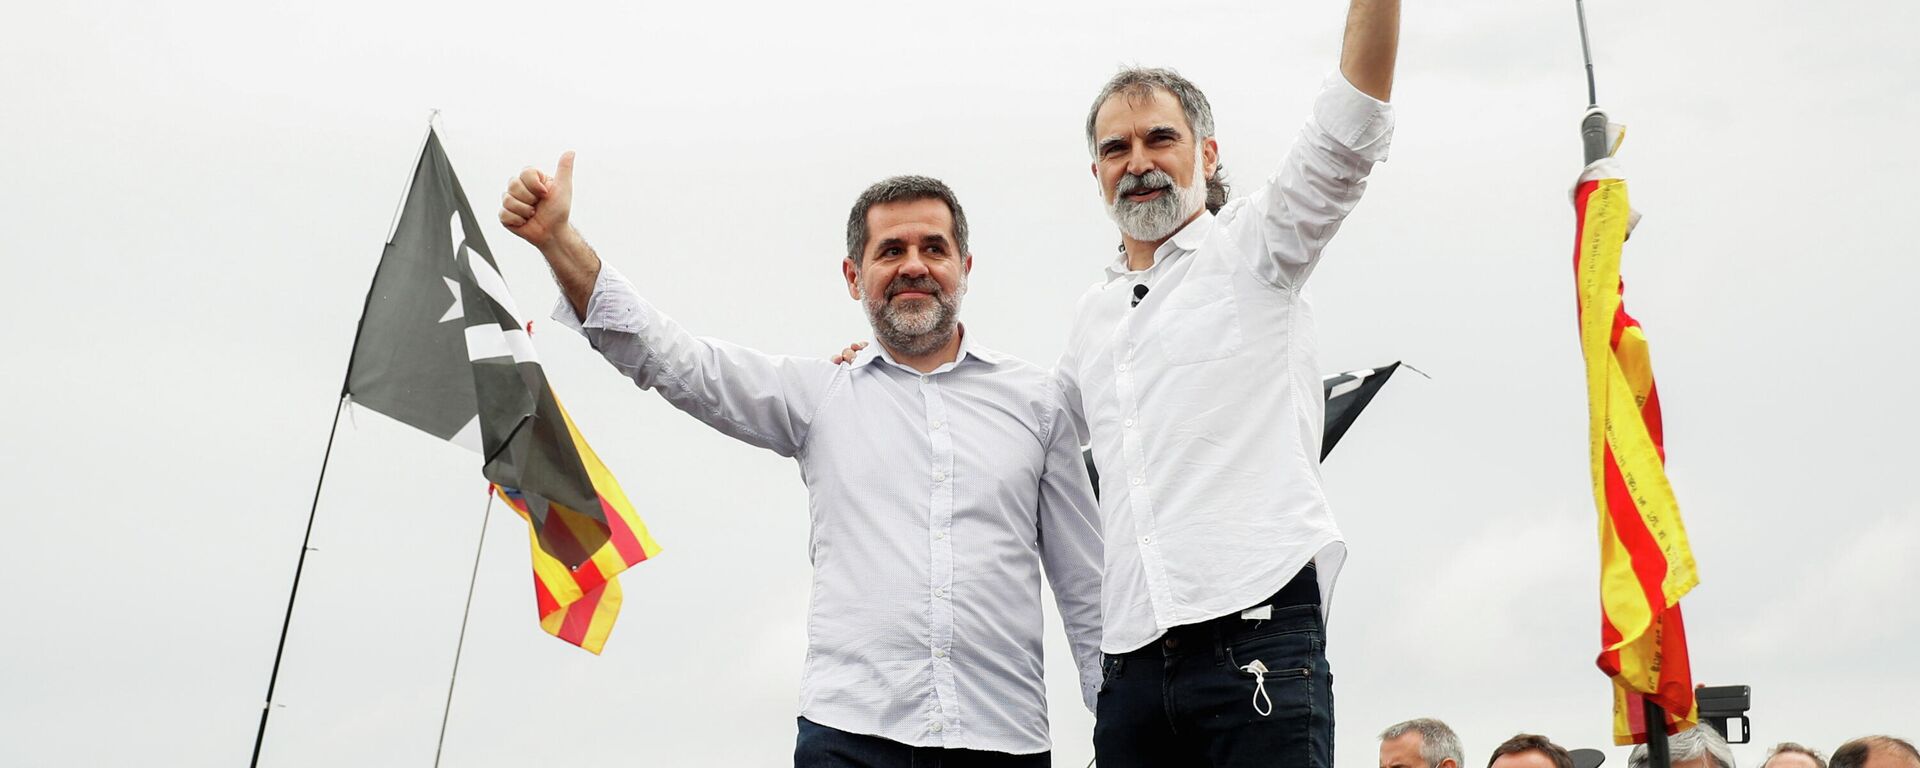 Jordi Sánchez y Jordi Cuixart,  los líderes del movimiento independentista catalán  - Sputnik Mundo, 1920, 24.06.2021